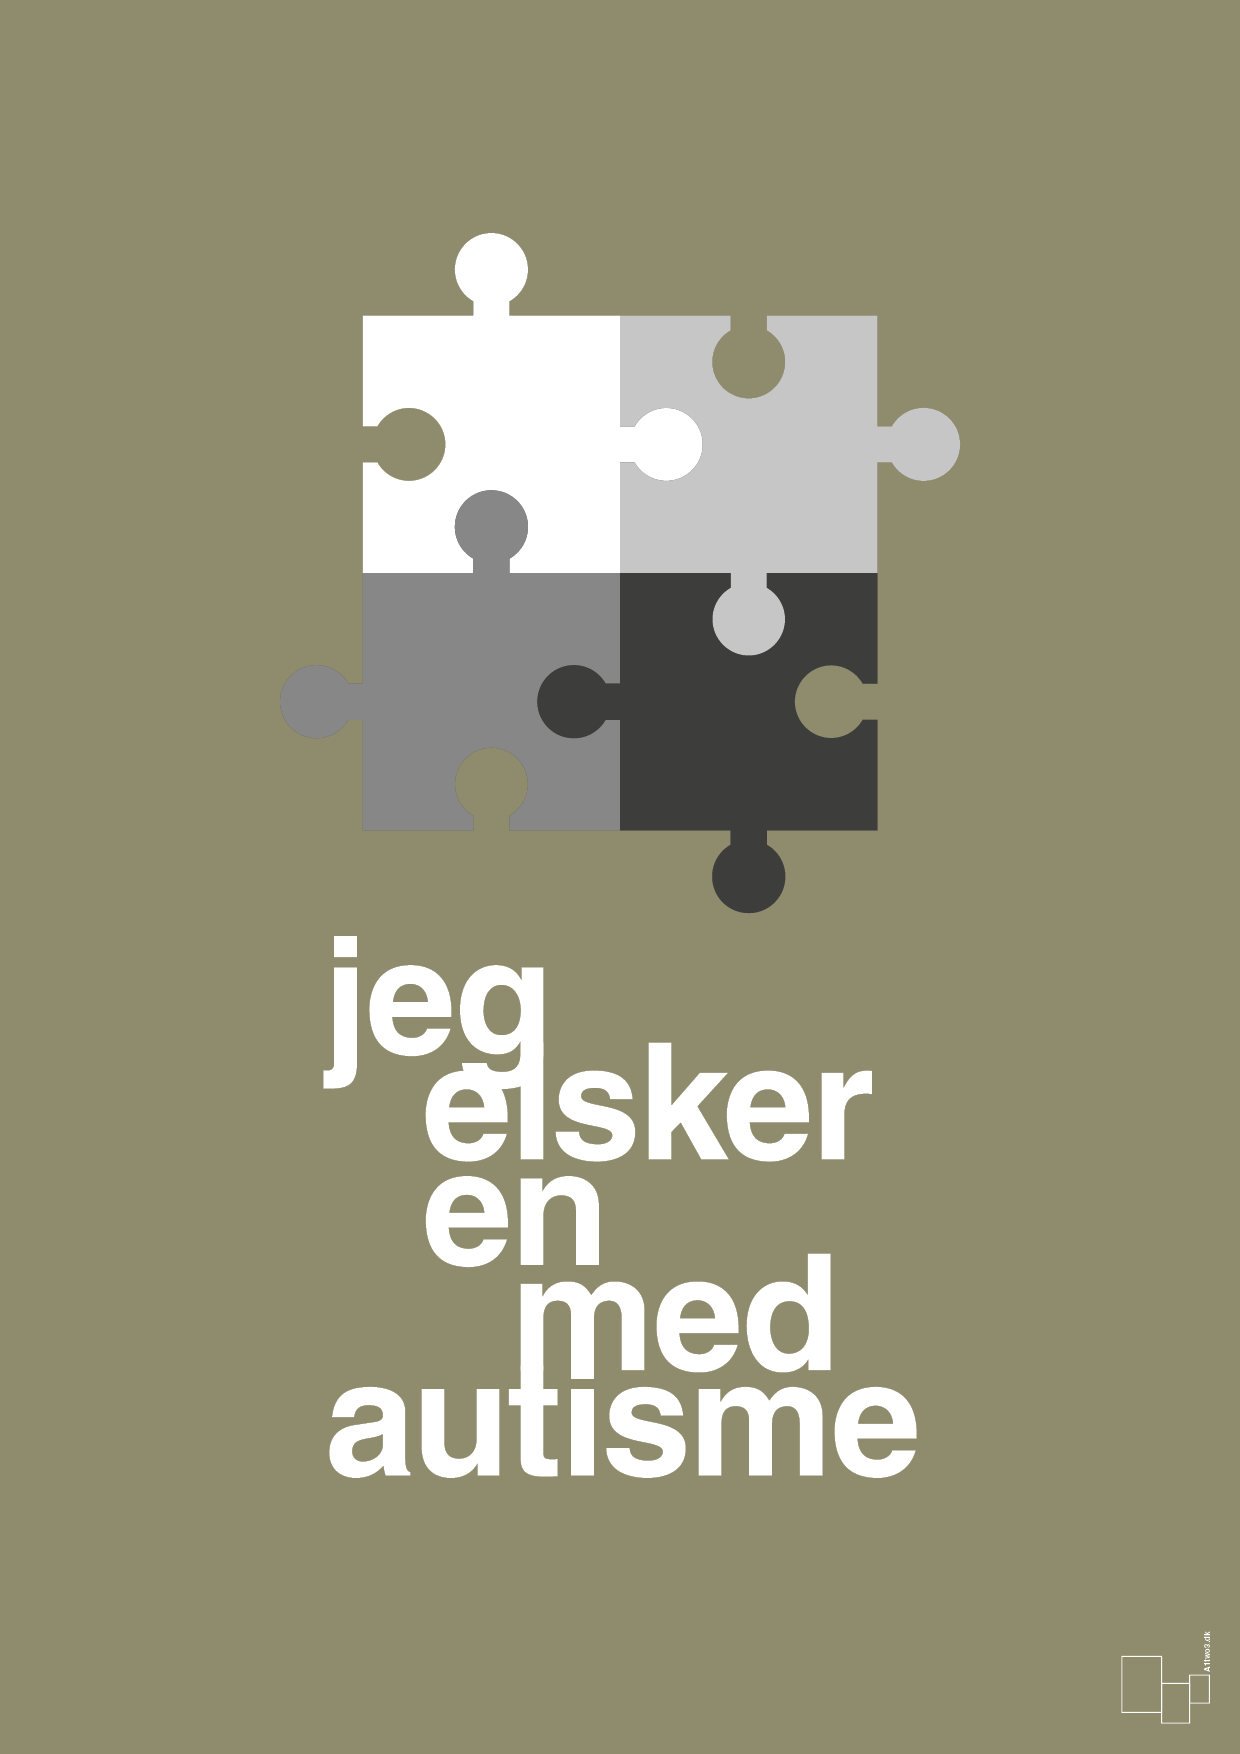 jeg elsker en med autisme - Plakat med Samfund i Misty Forrest